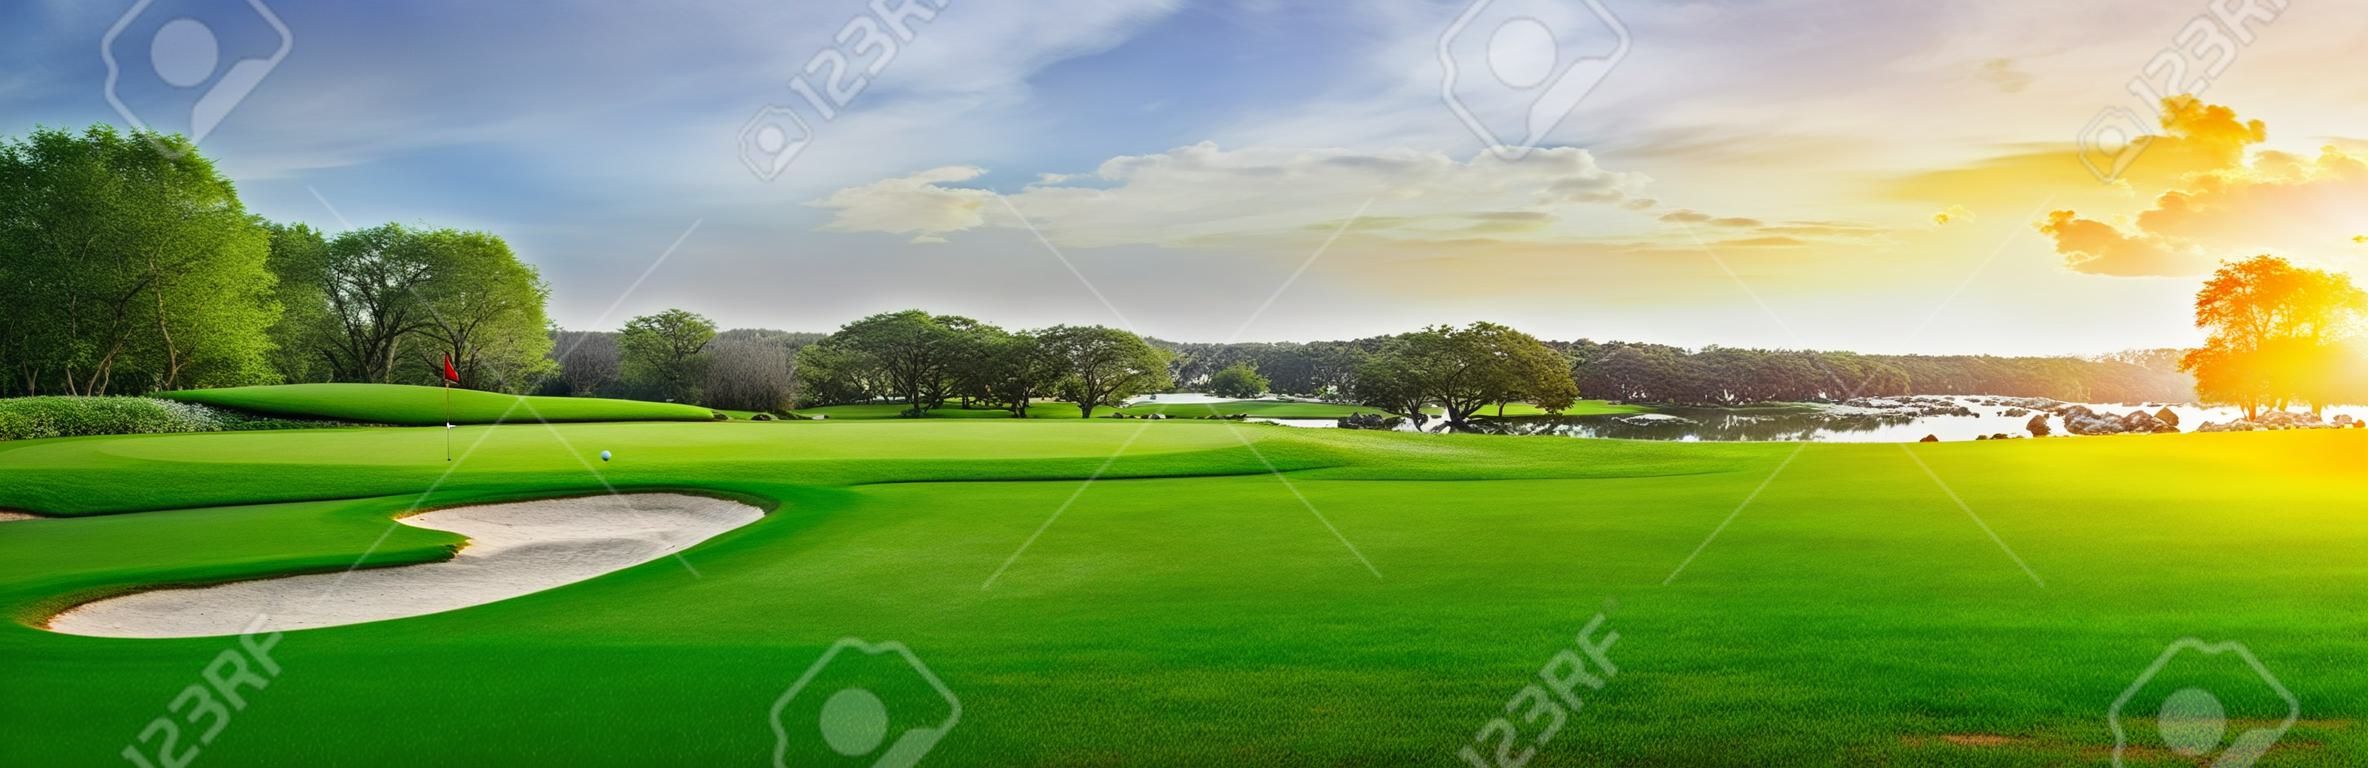 골프장에 푸른 잔디와 숲